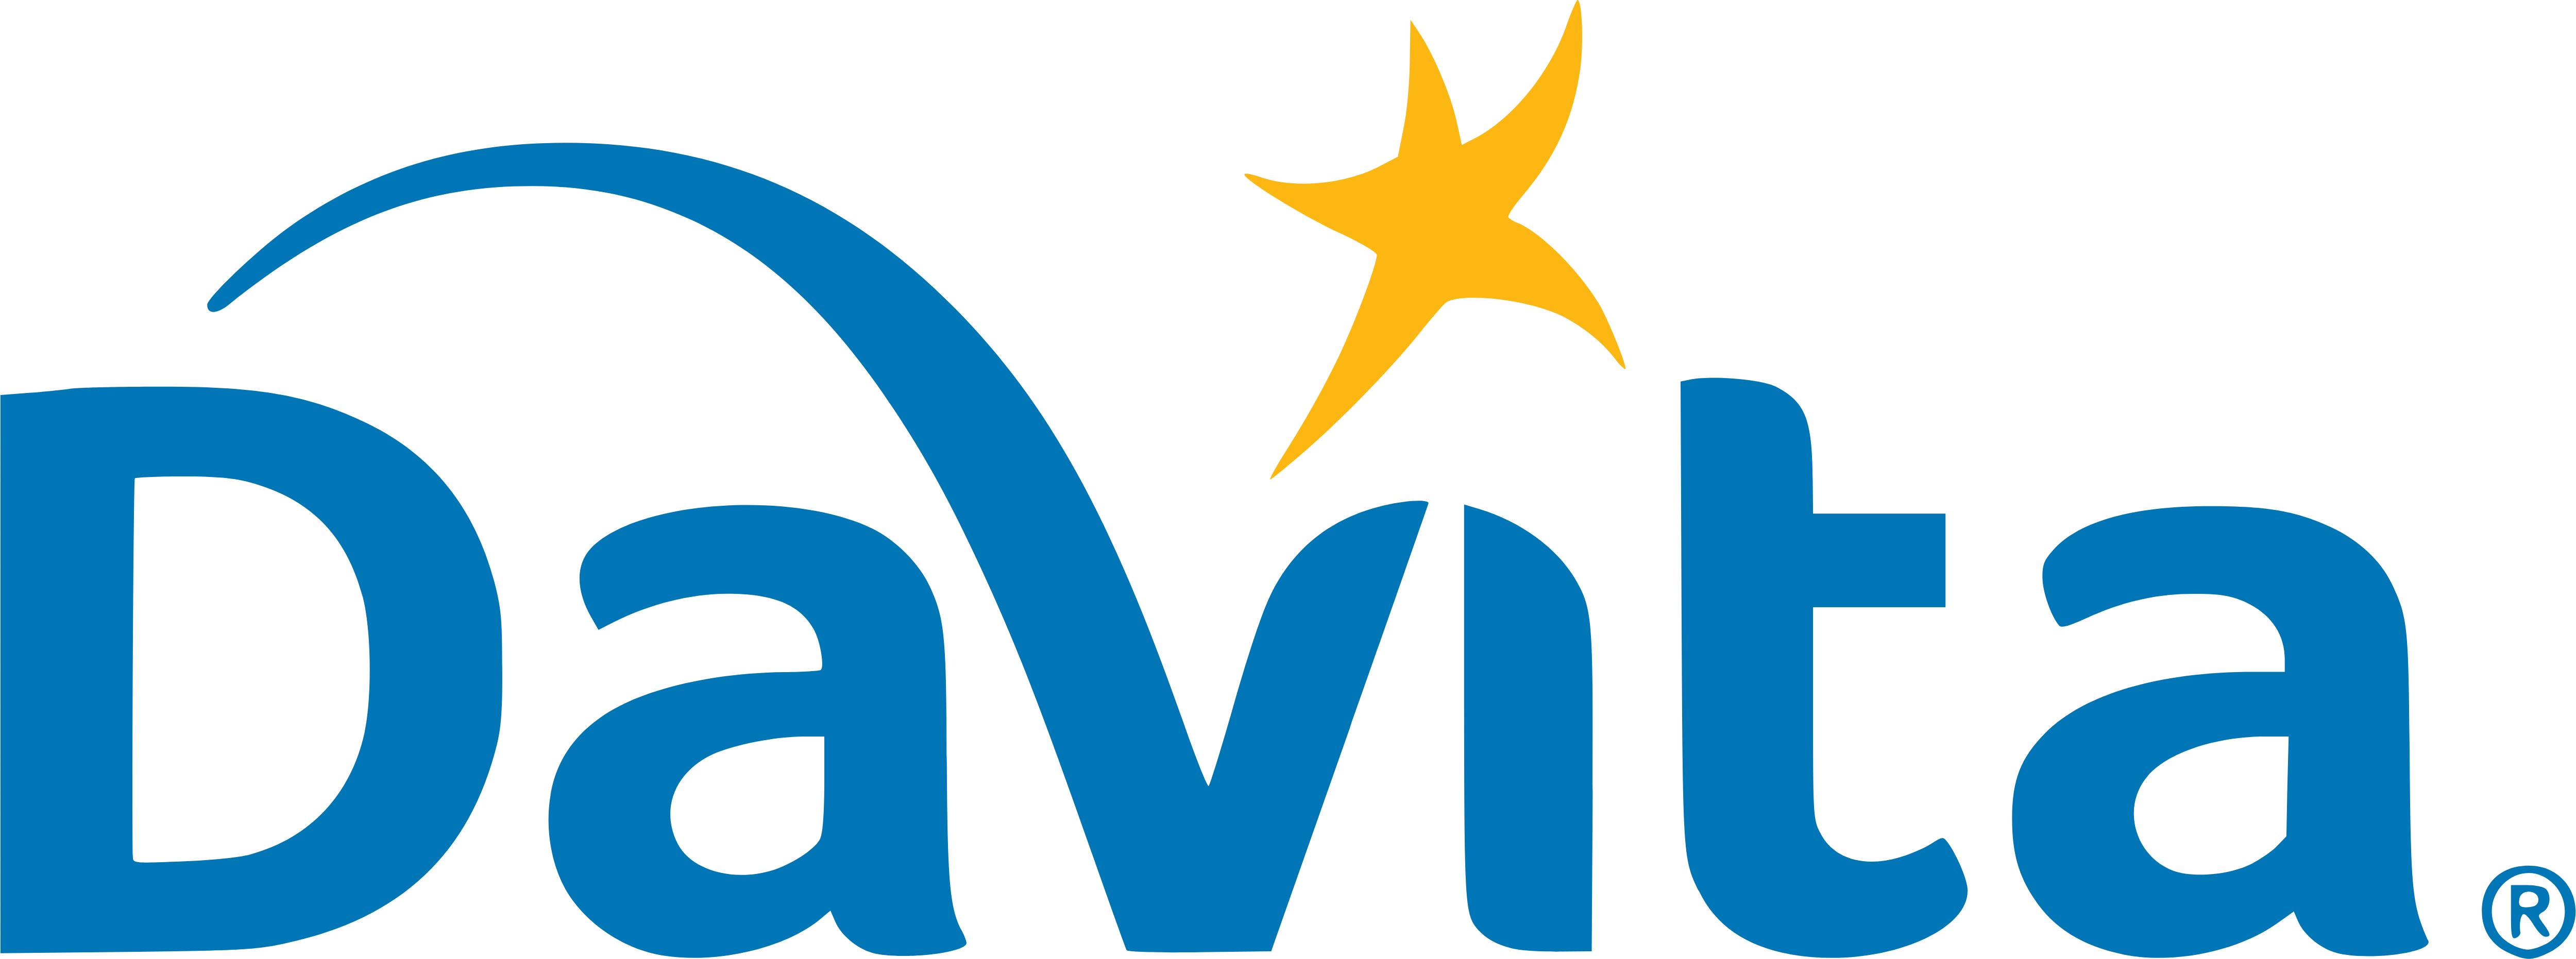 DaVita, a healthcare company.